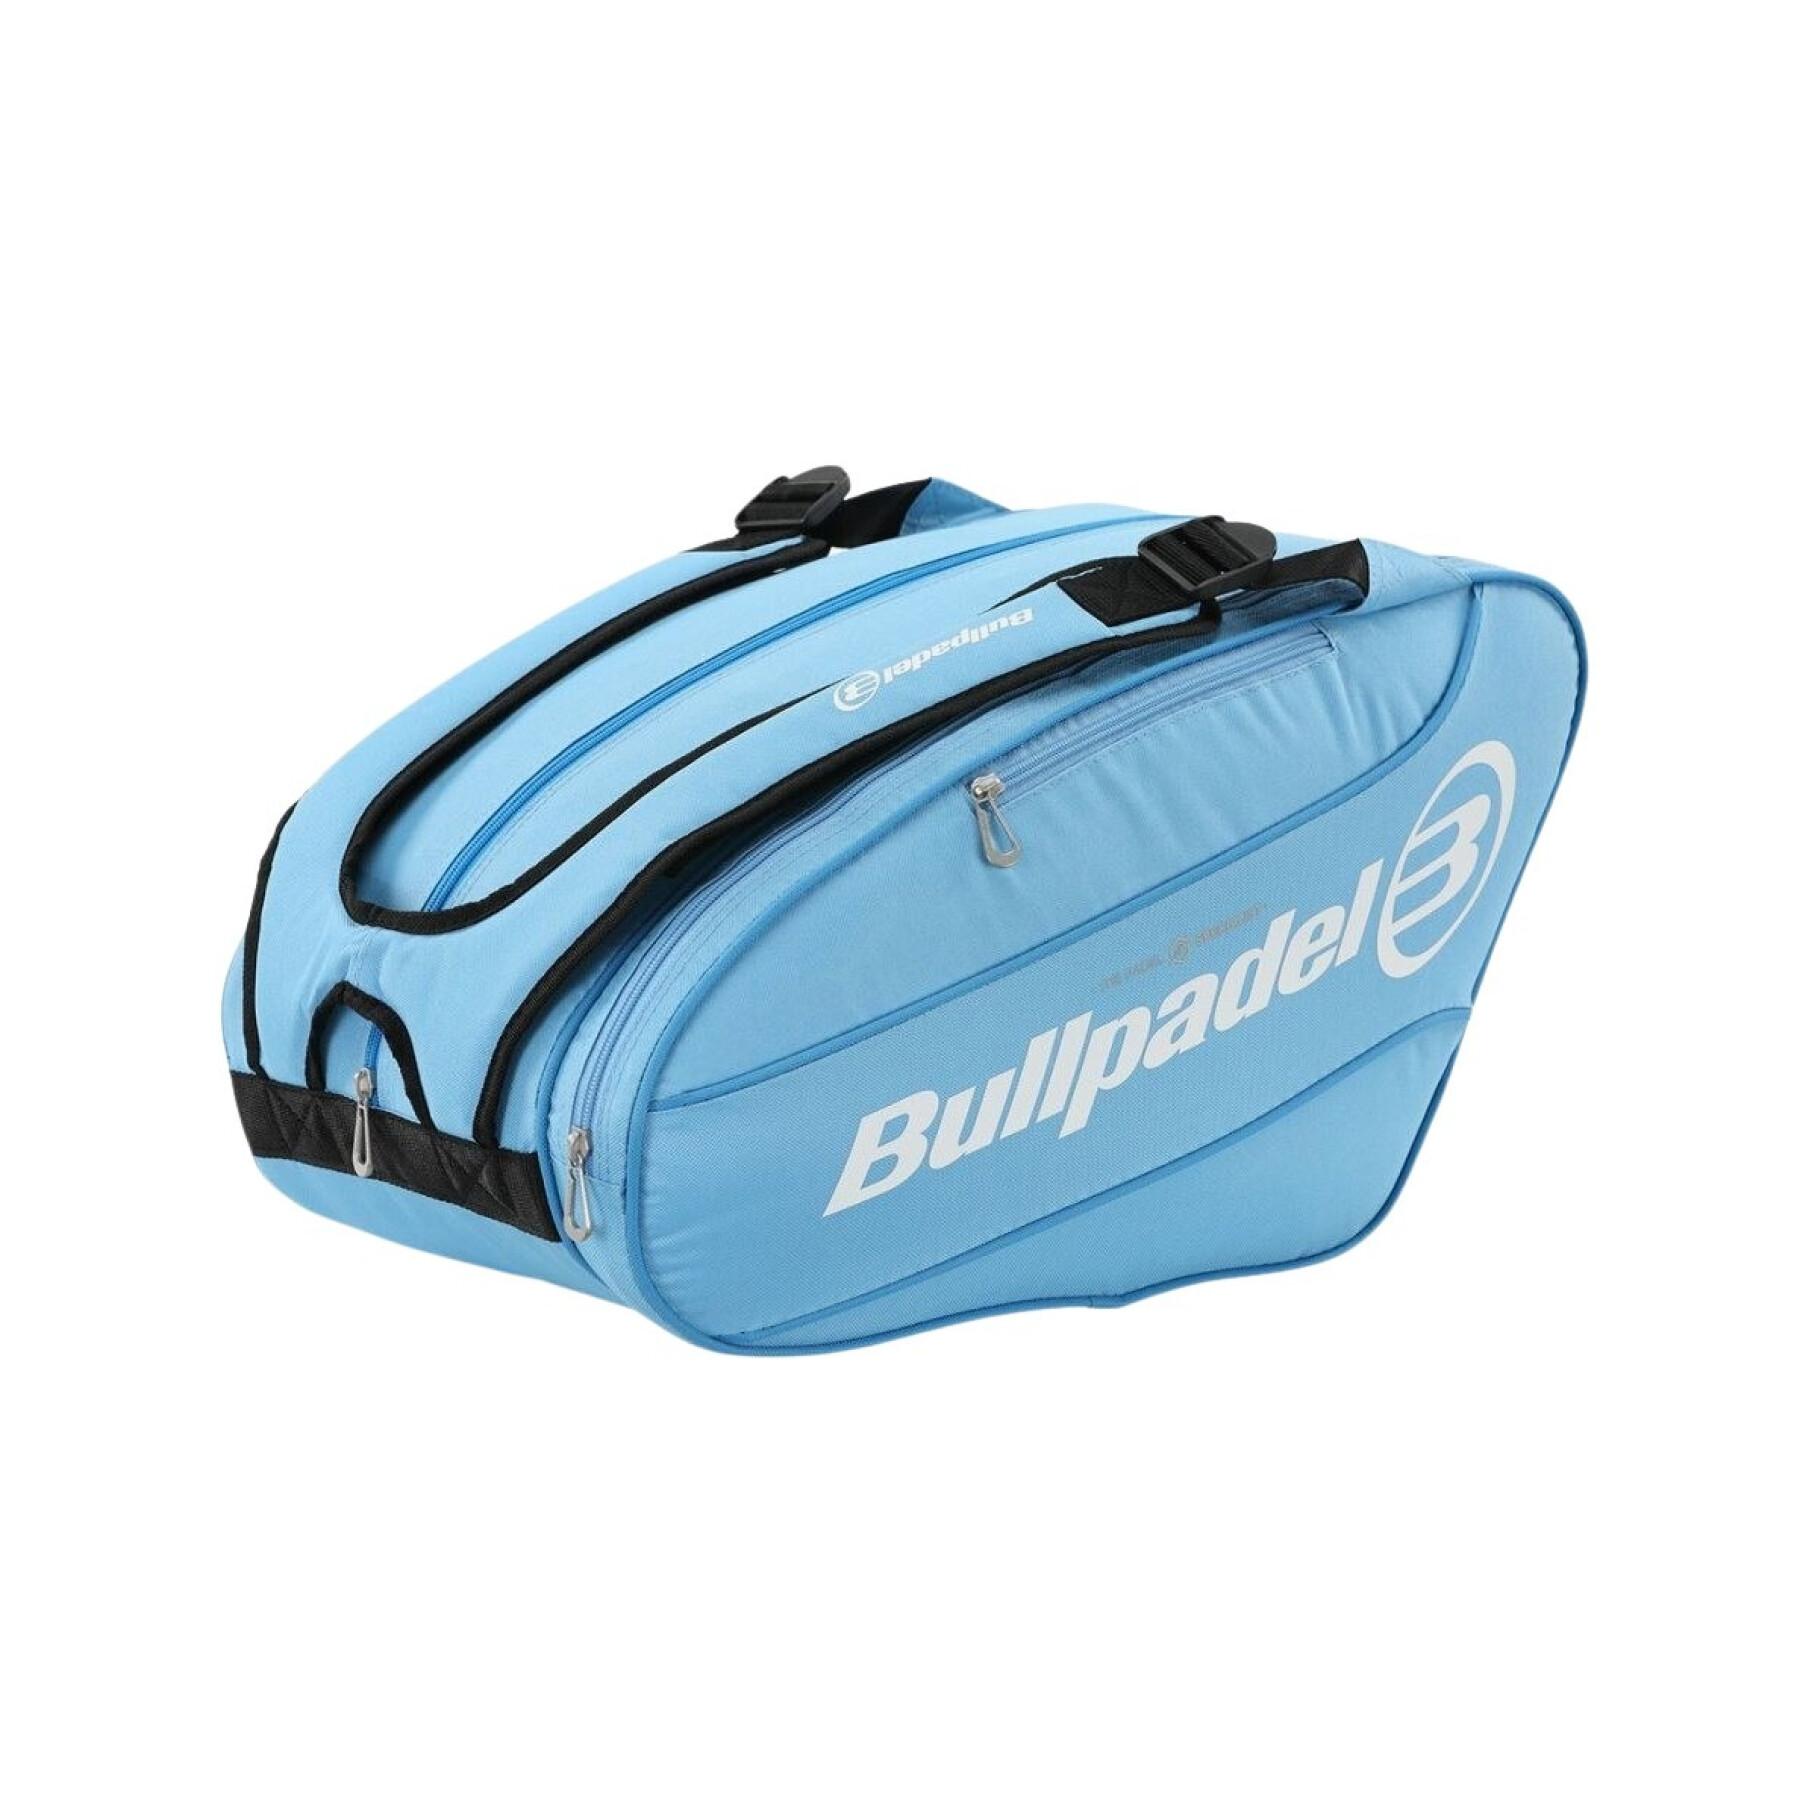 Racket bag from padel Bullpadel BPP23015 Tour